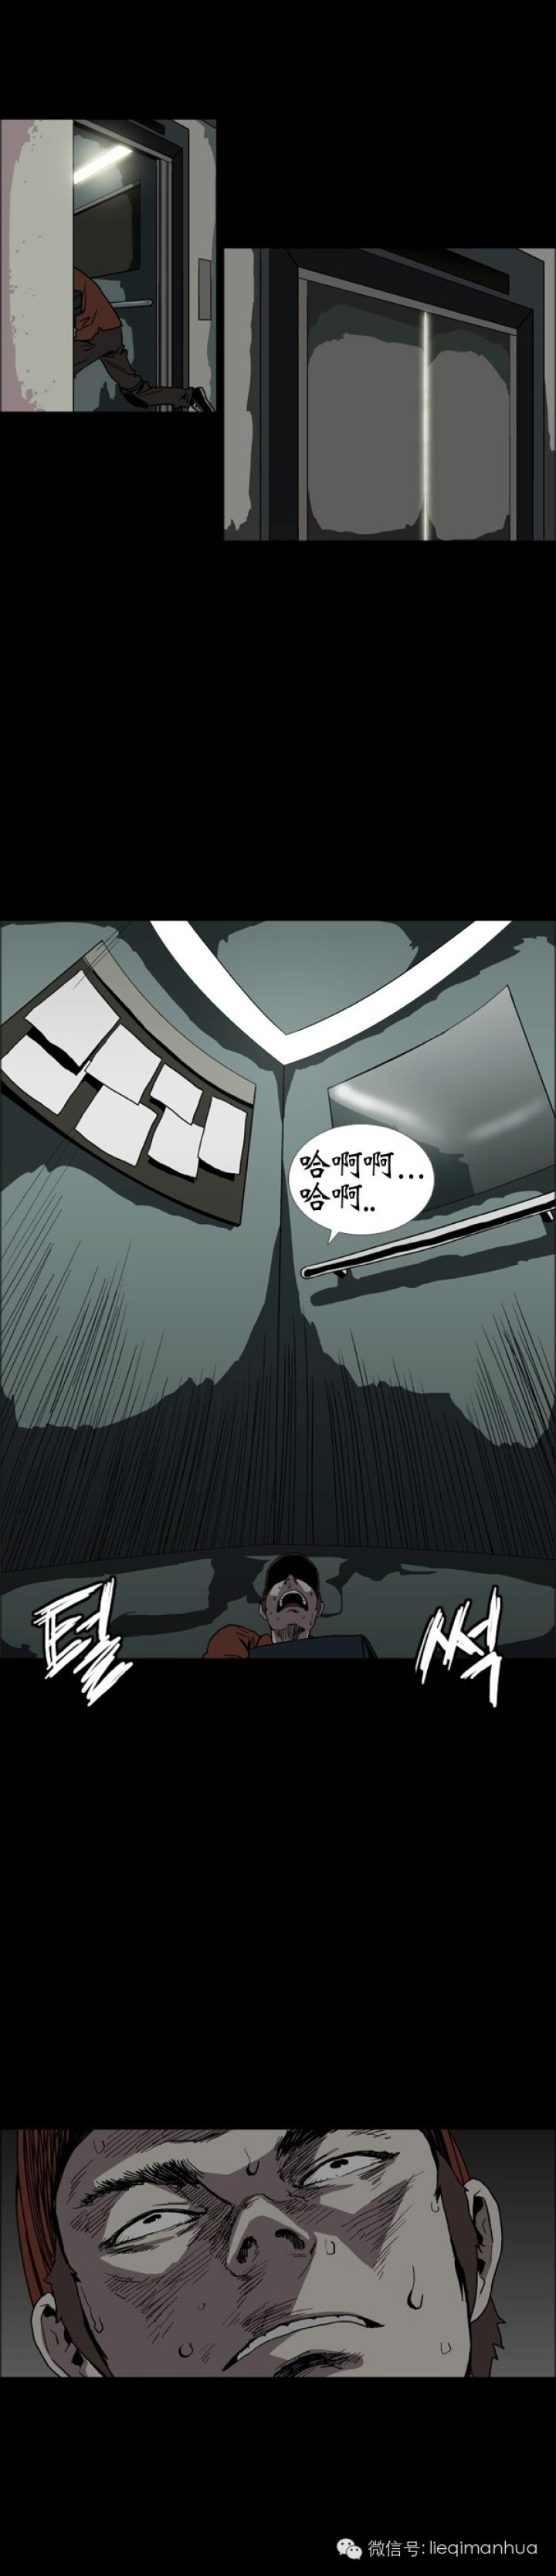 韩国漫画《外卖服务》-黑白漫话